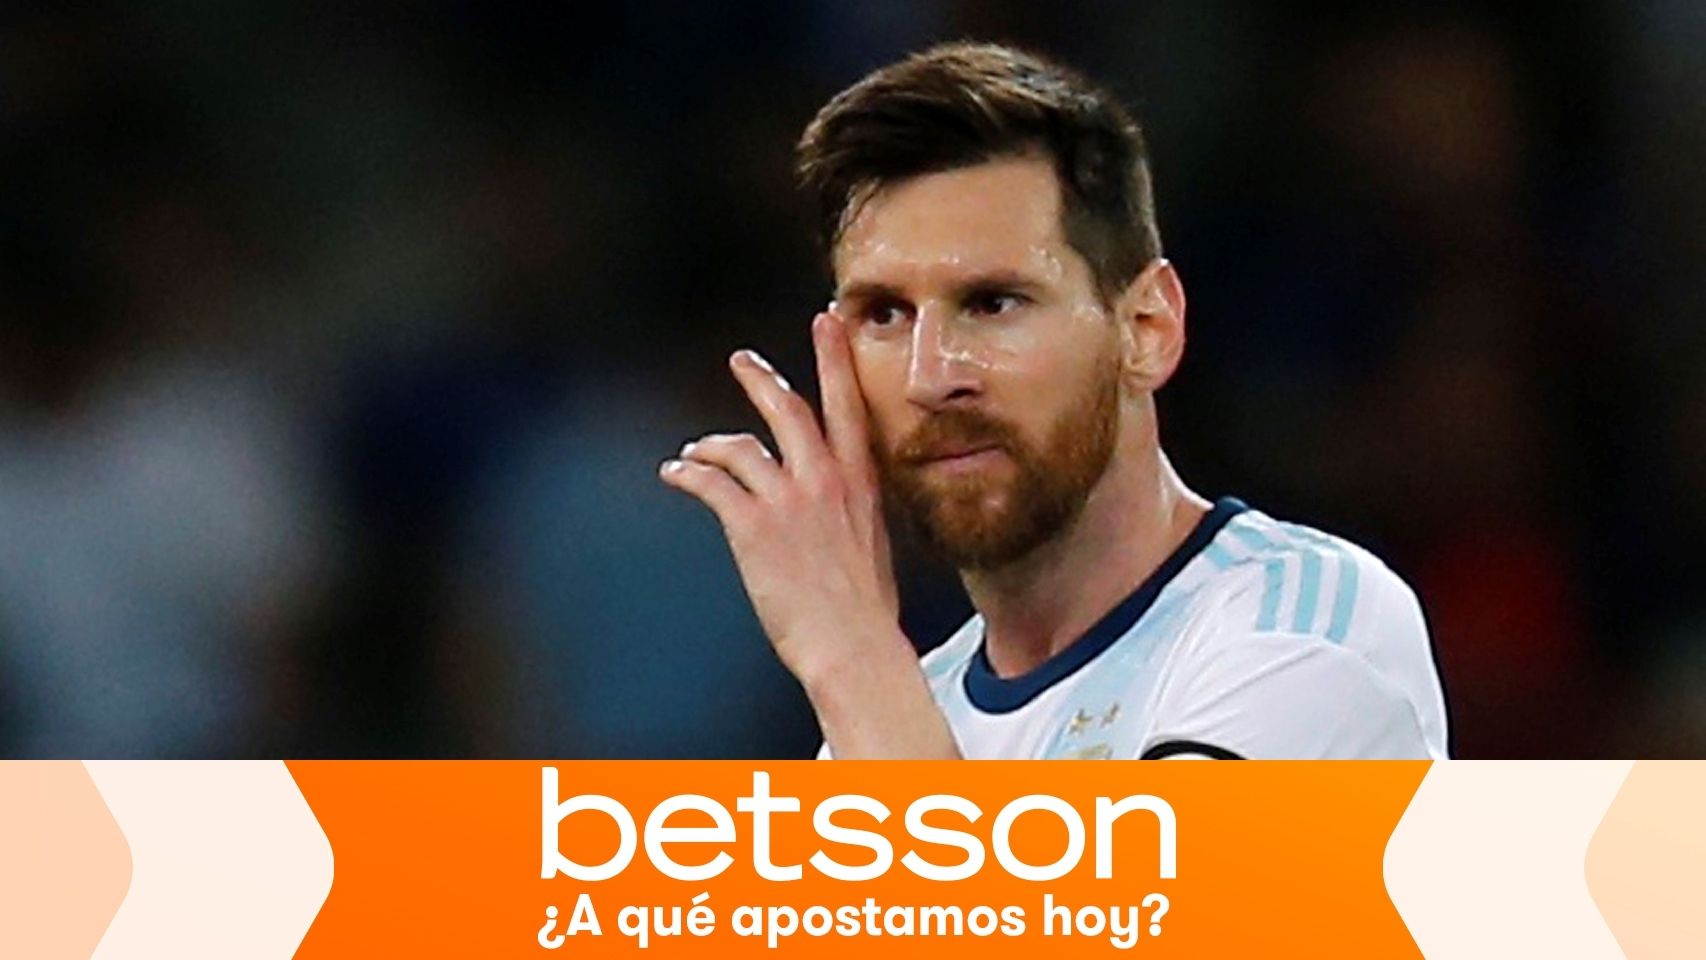 Triplica tu apuesta si Messi es el primero en anotar en el Catar - Argentina